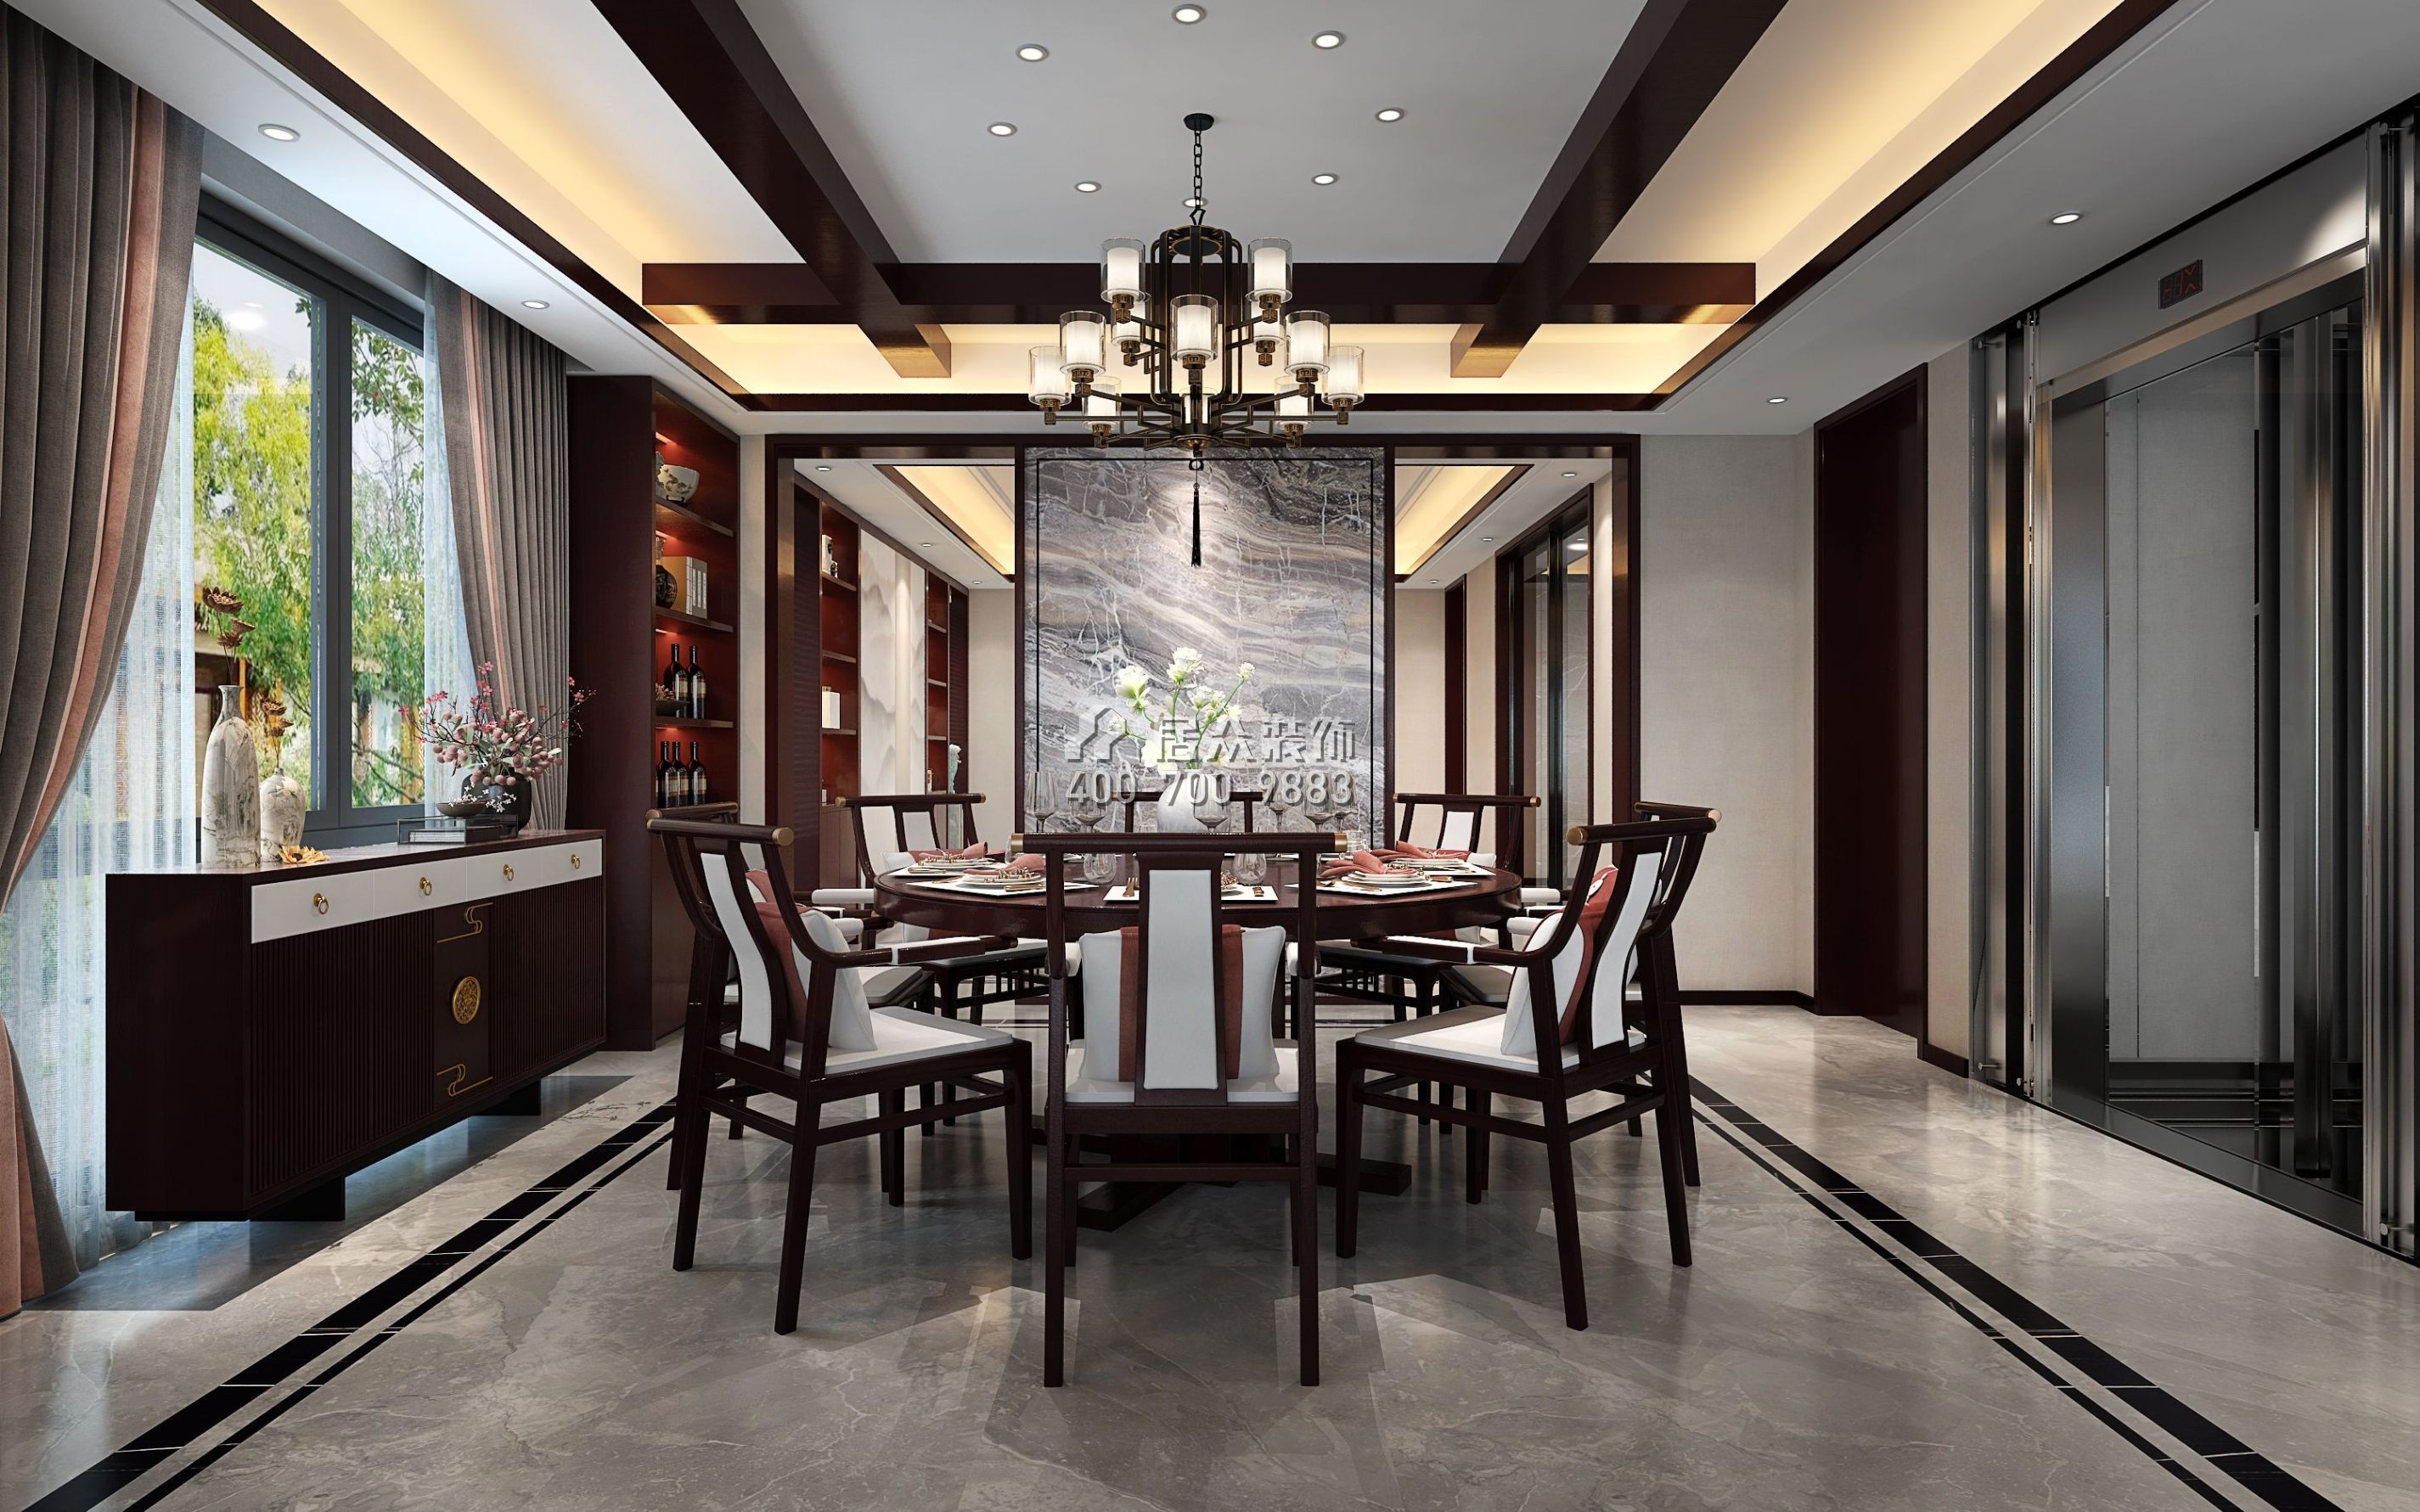 天鹅湾3期450平方米中式风格别墅户型餐厅装修效果图